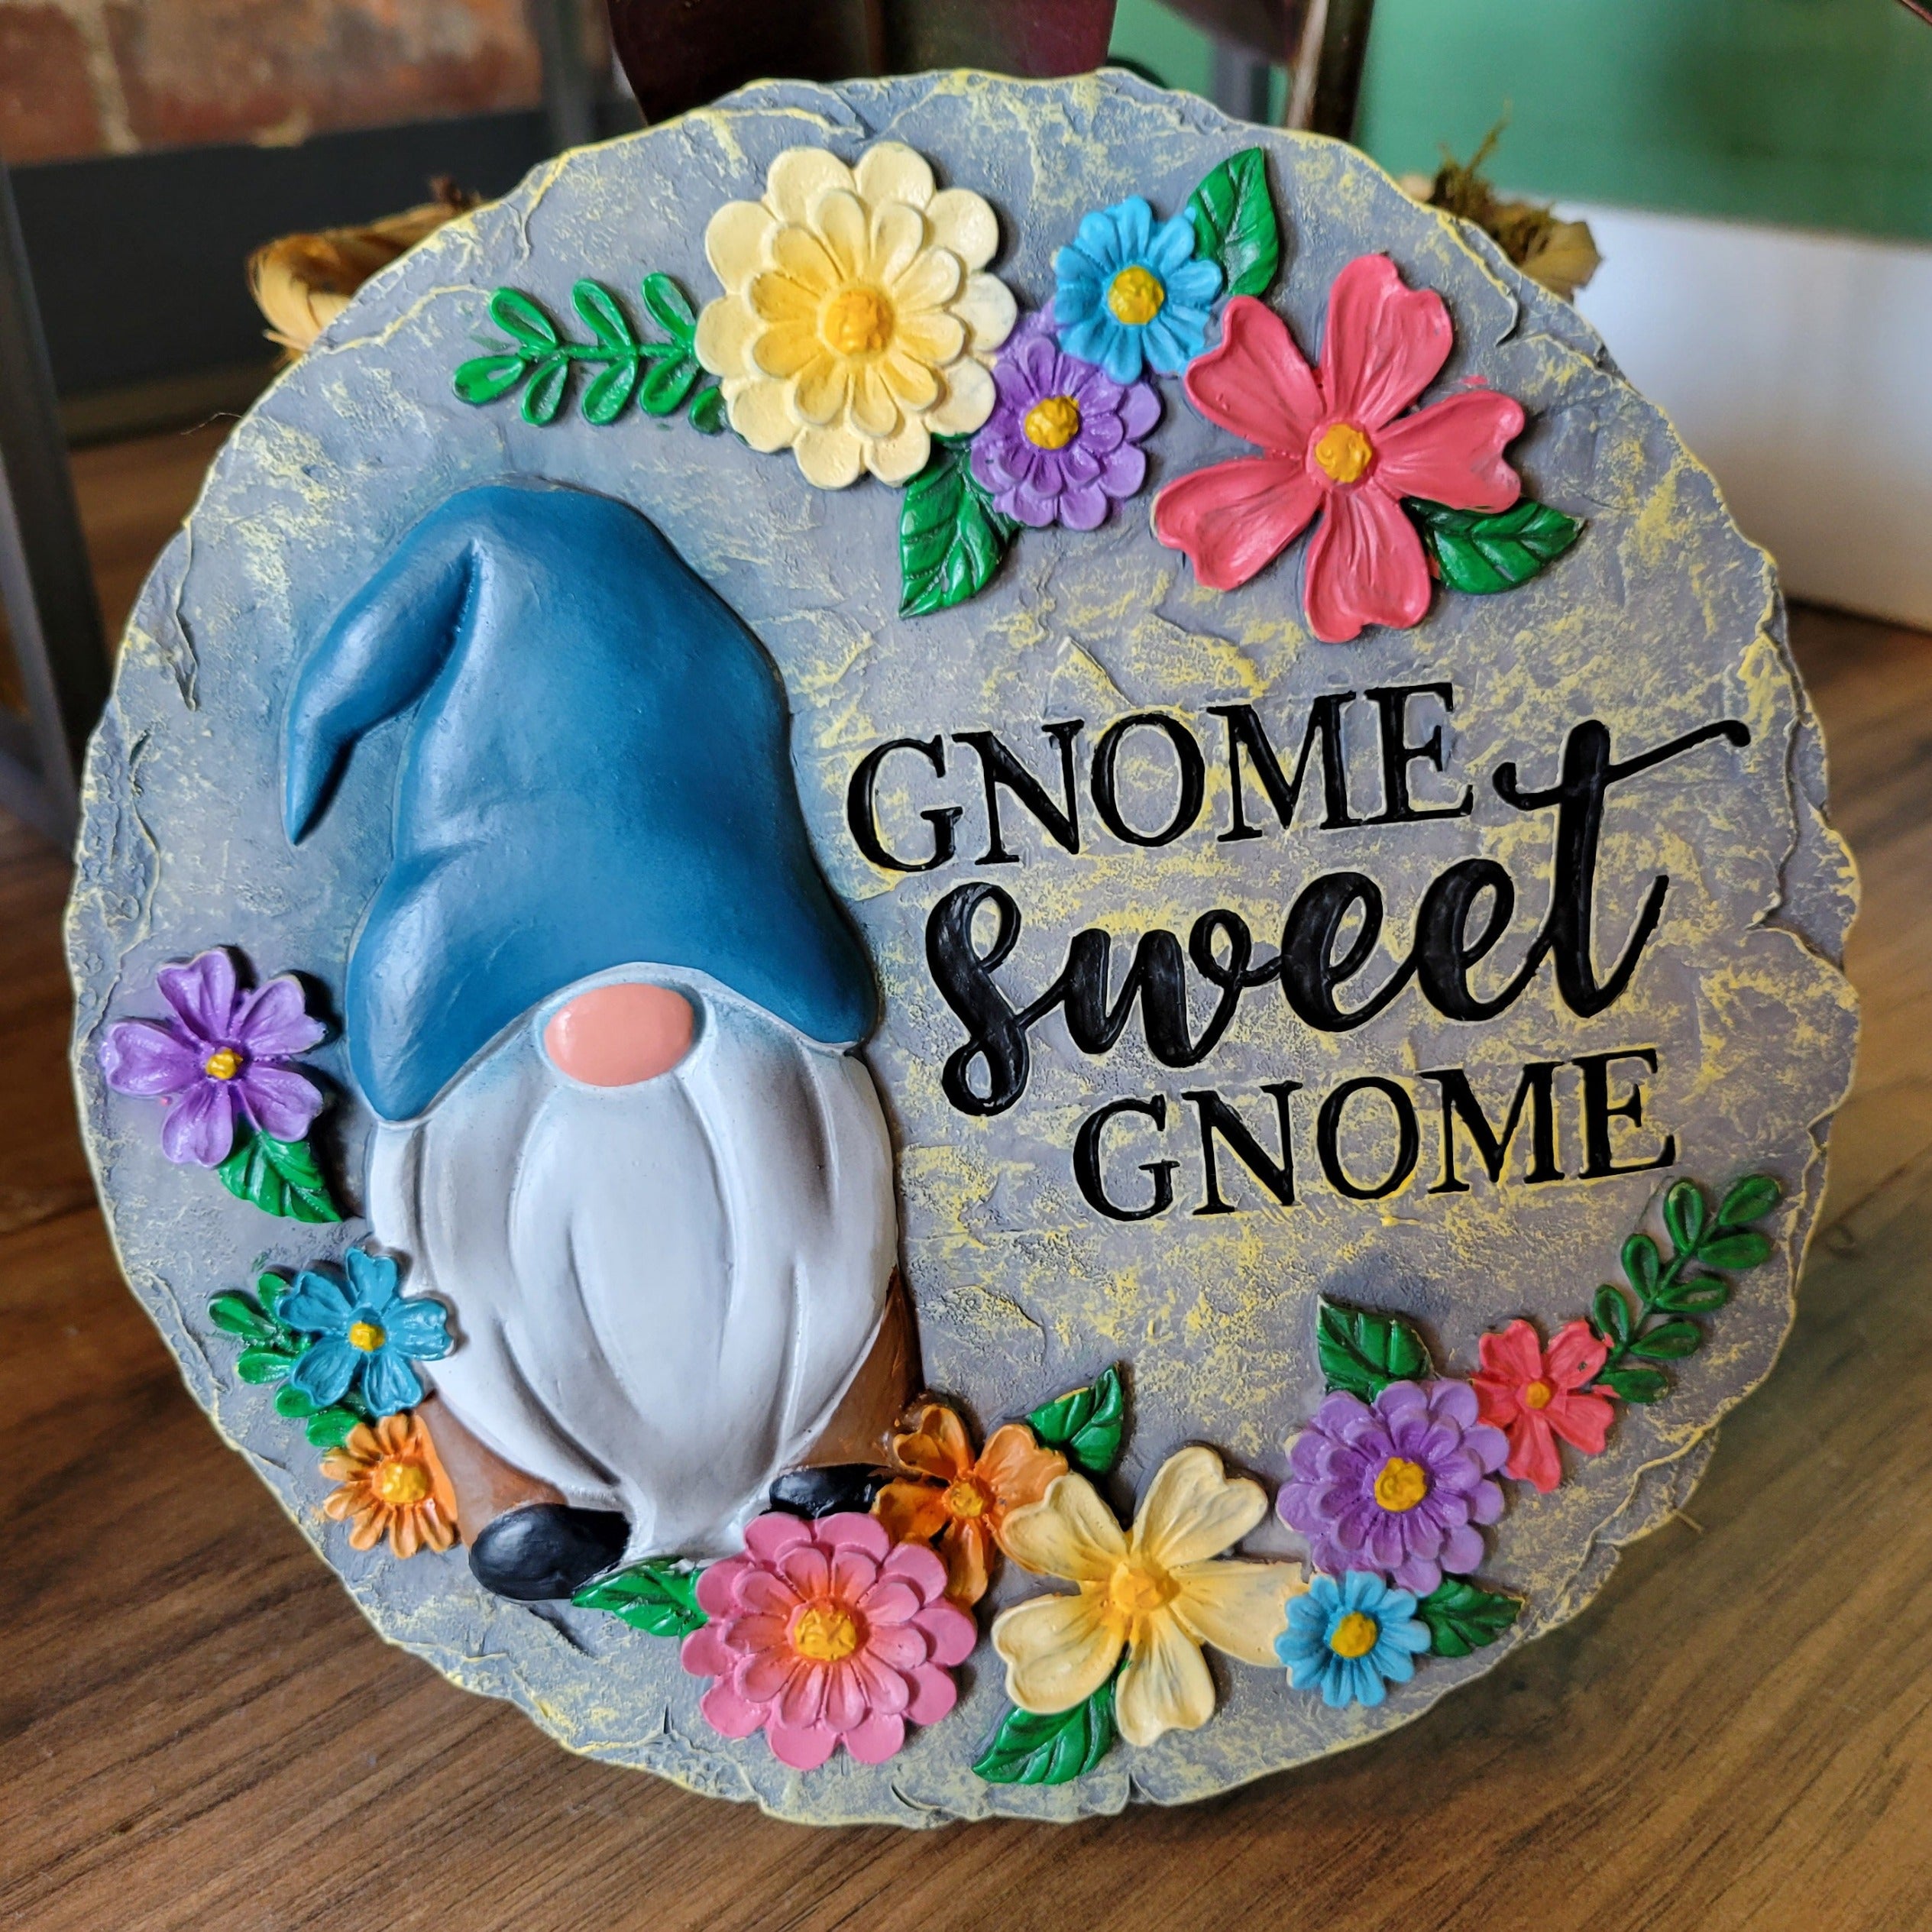 Gnome Sweet Gnome Garden Stone